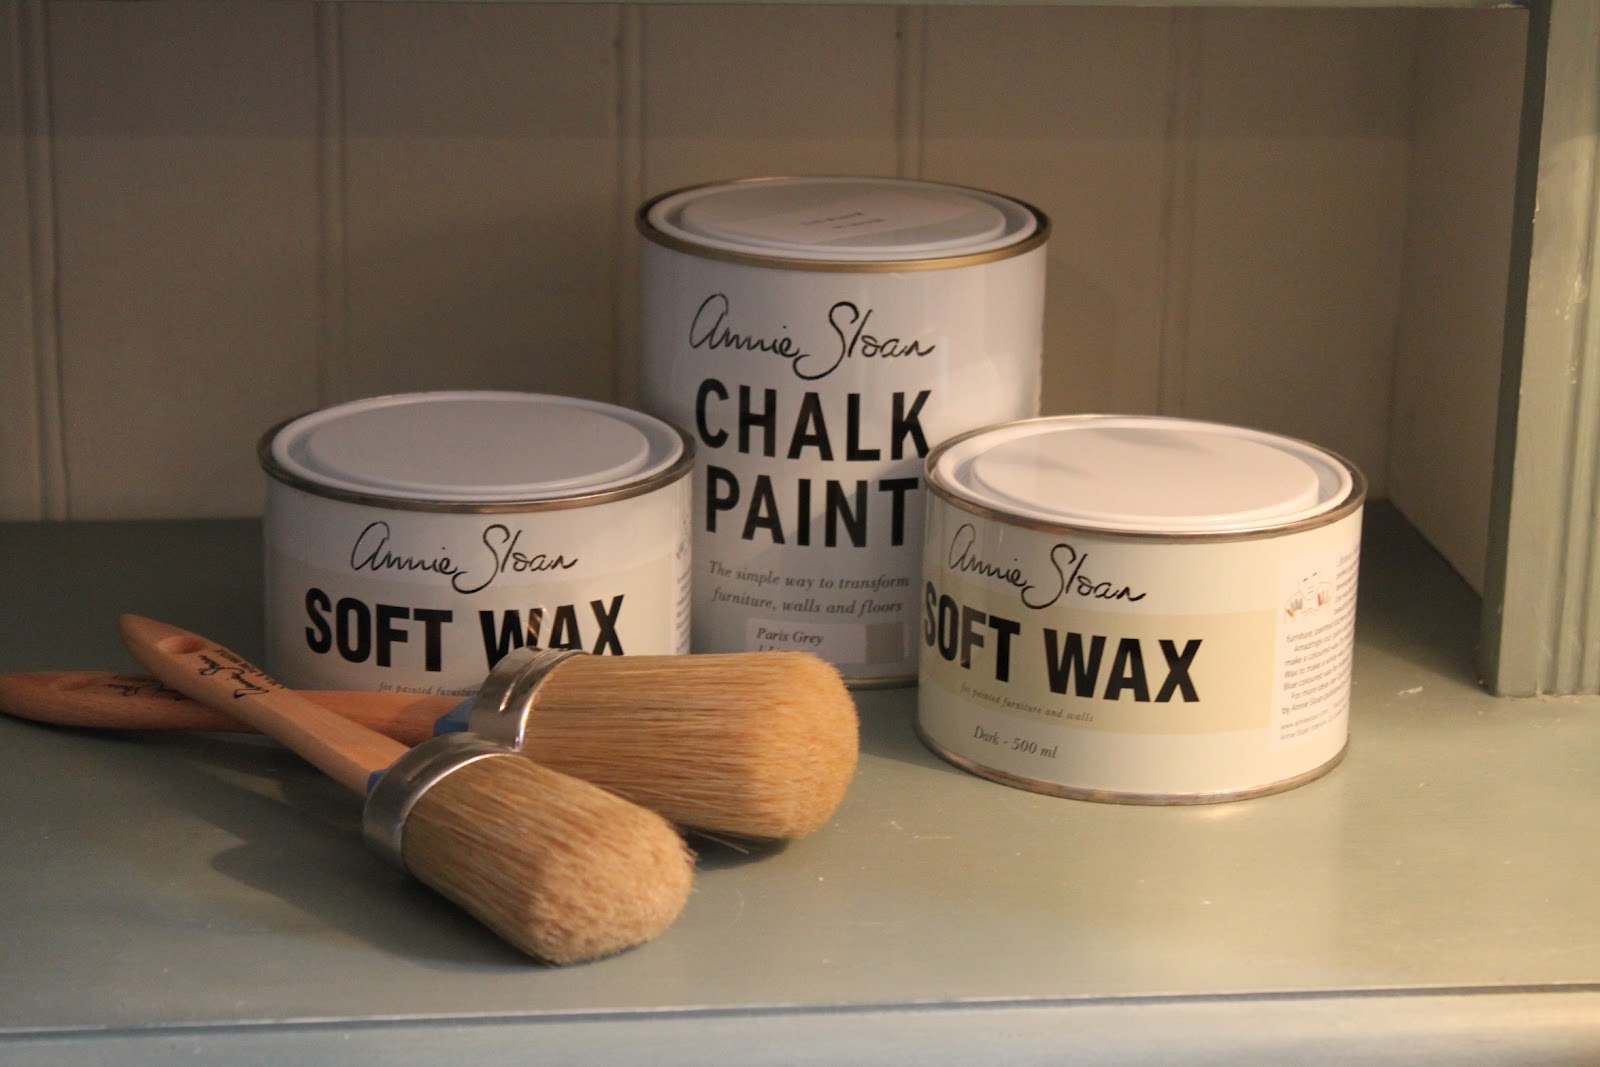 Annie Sloan Chalk Paint Clear Wax 500 ml